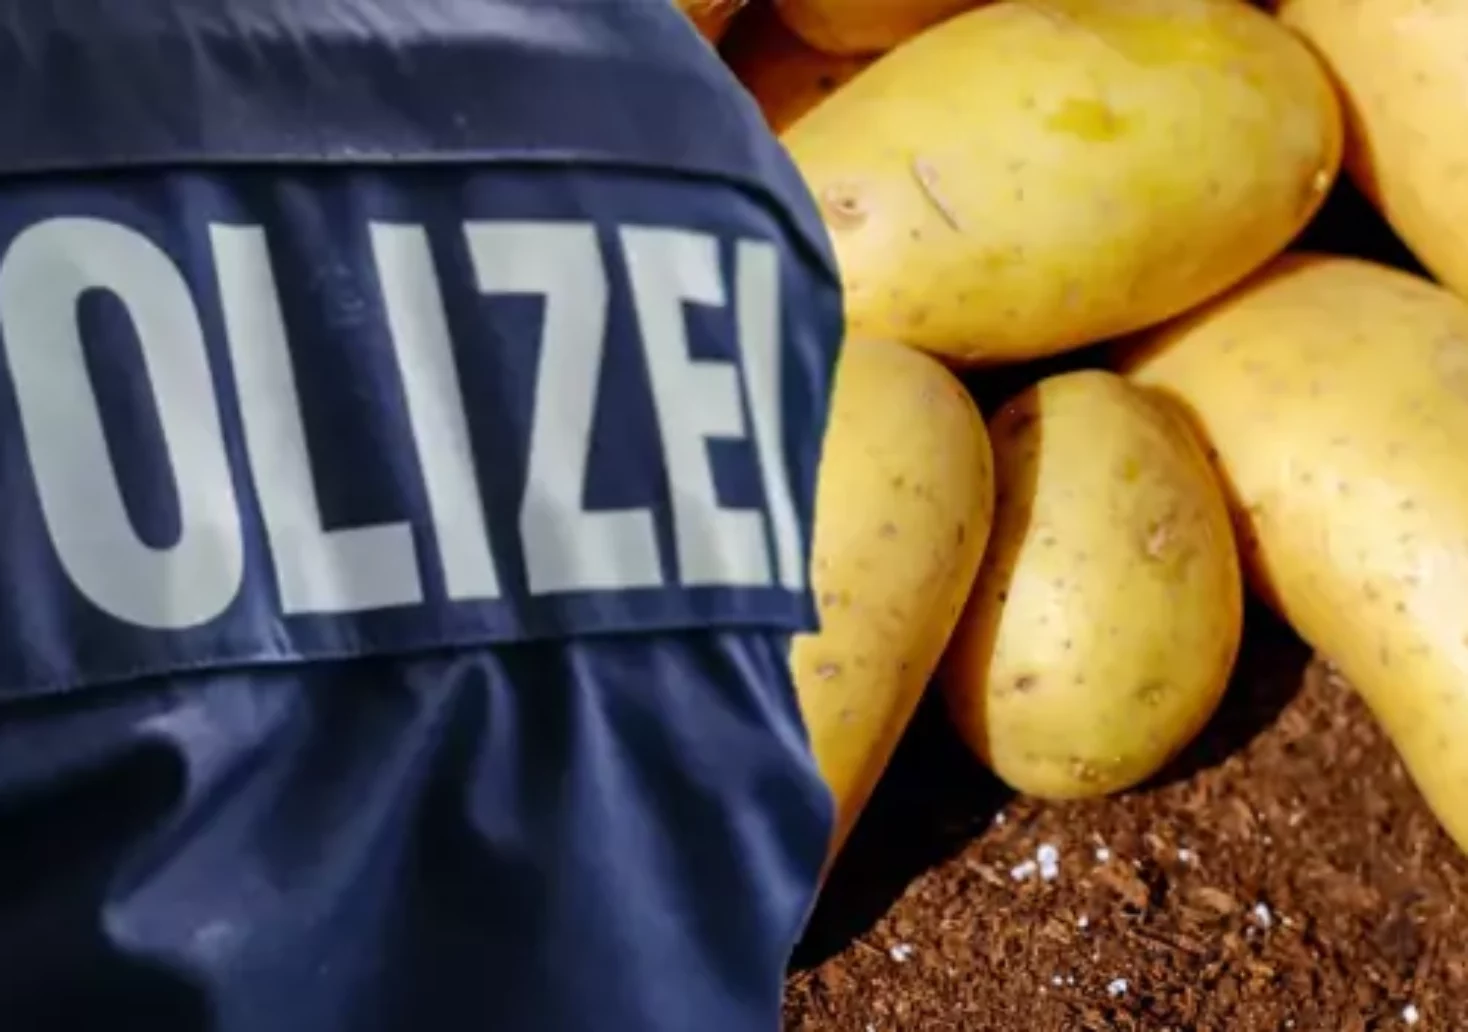 Kartoffel-Betrug: Landwirt erlebte beim Einkauf böse Überraschung